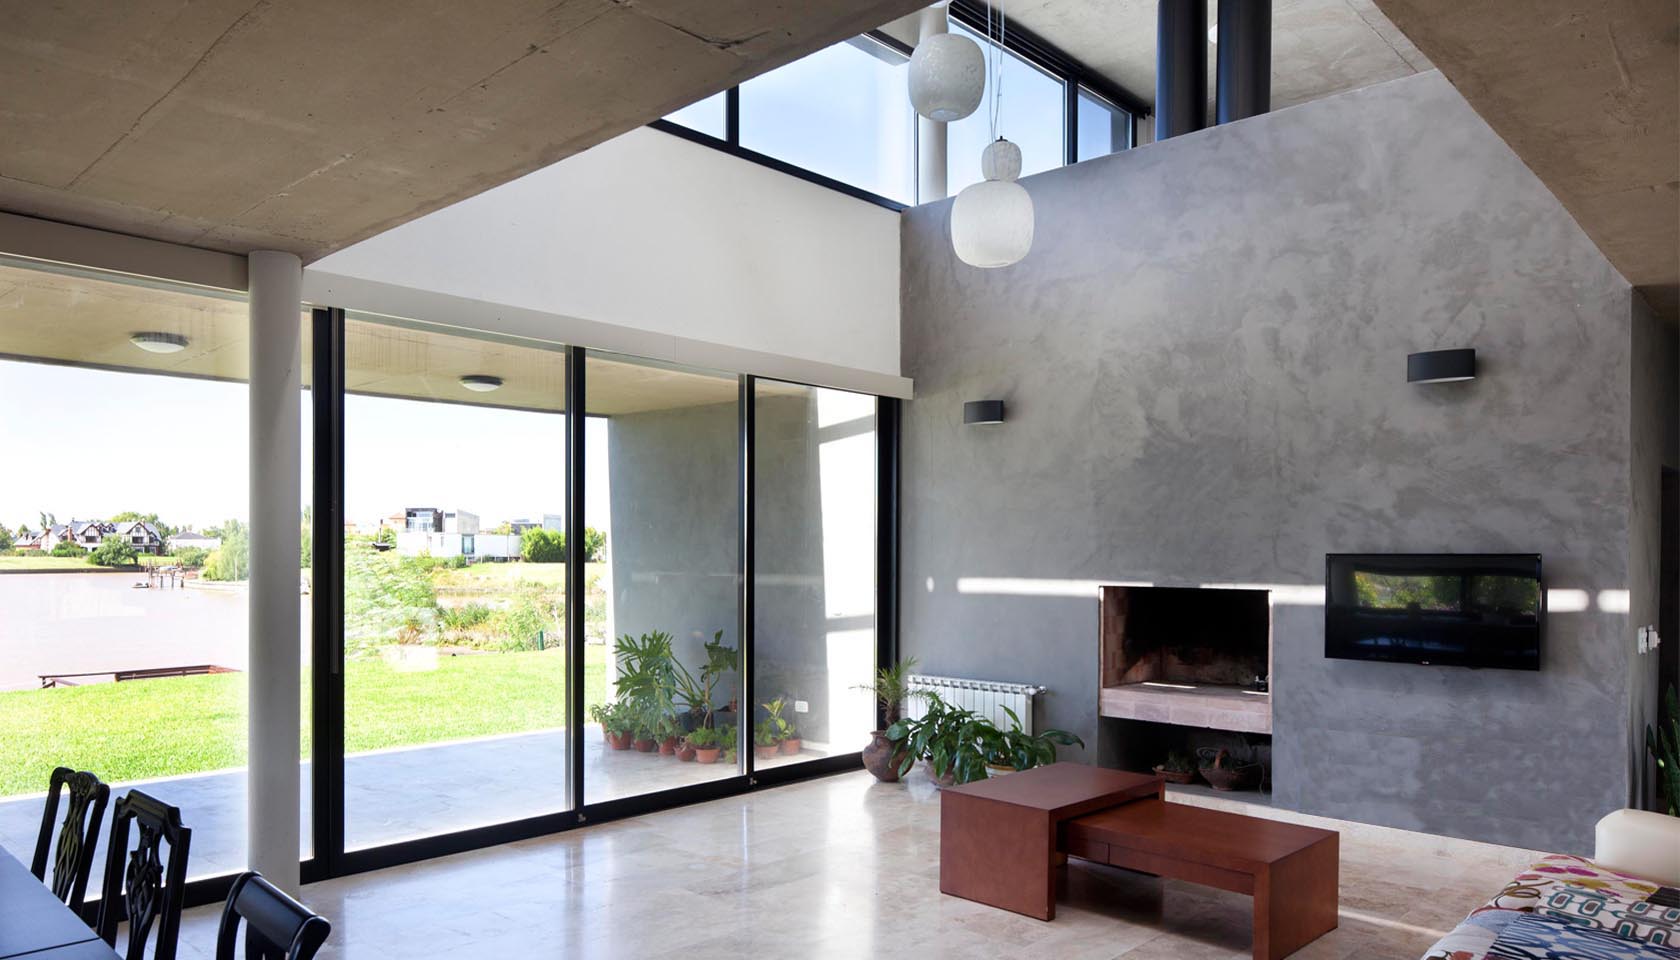 interiores modernos, casas con vista al lago, diseño de interiores minimalistas, grandes aberturas